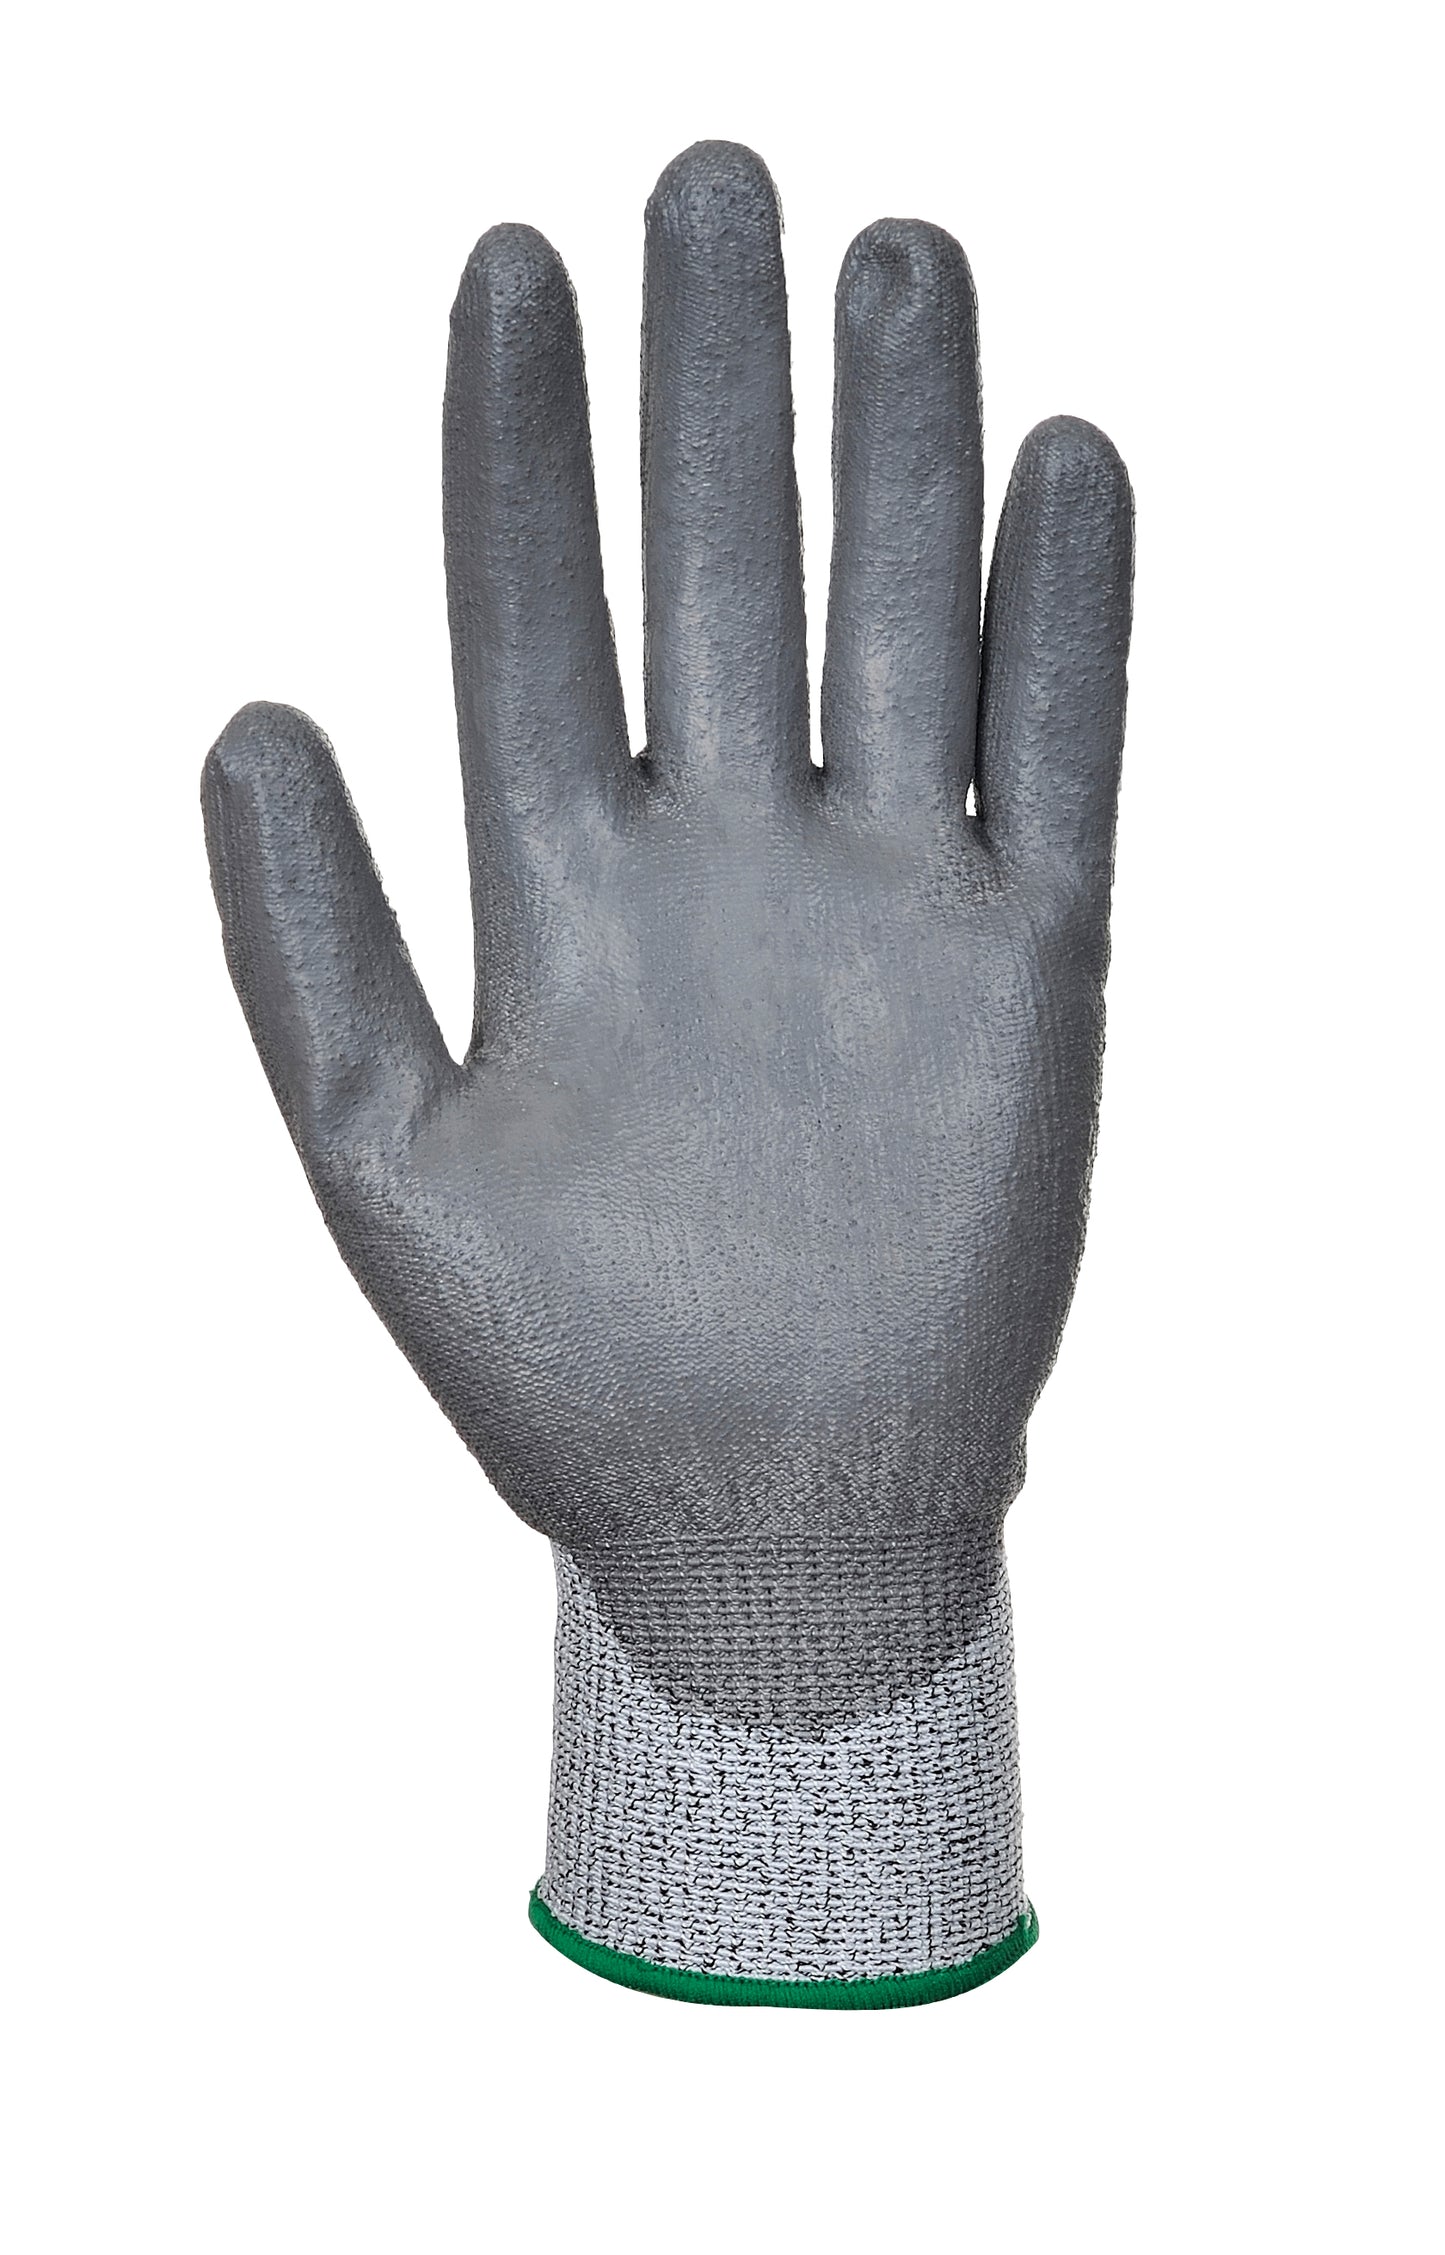 MR Cut PU Palm Glove Grey - A622 Palm 